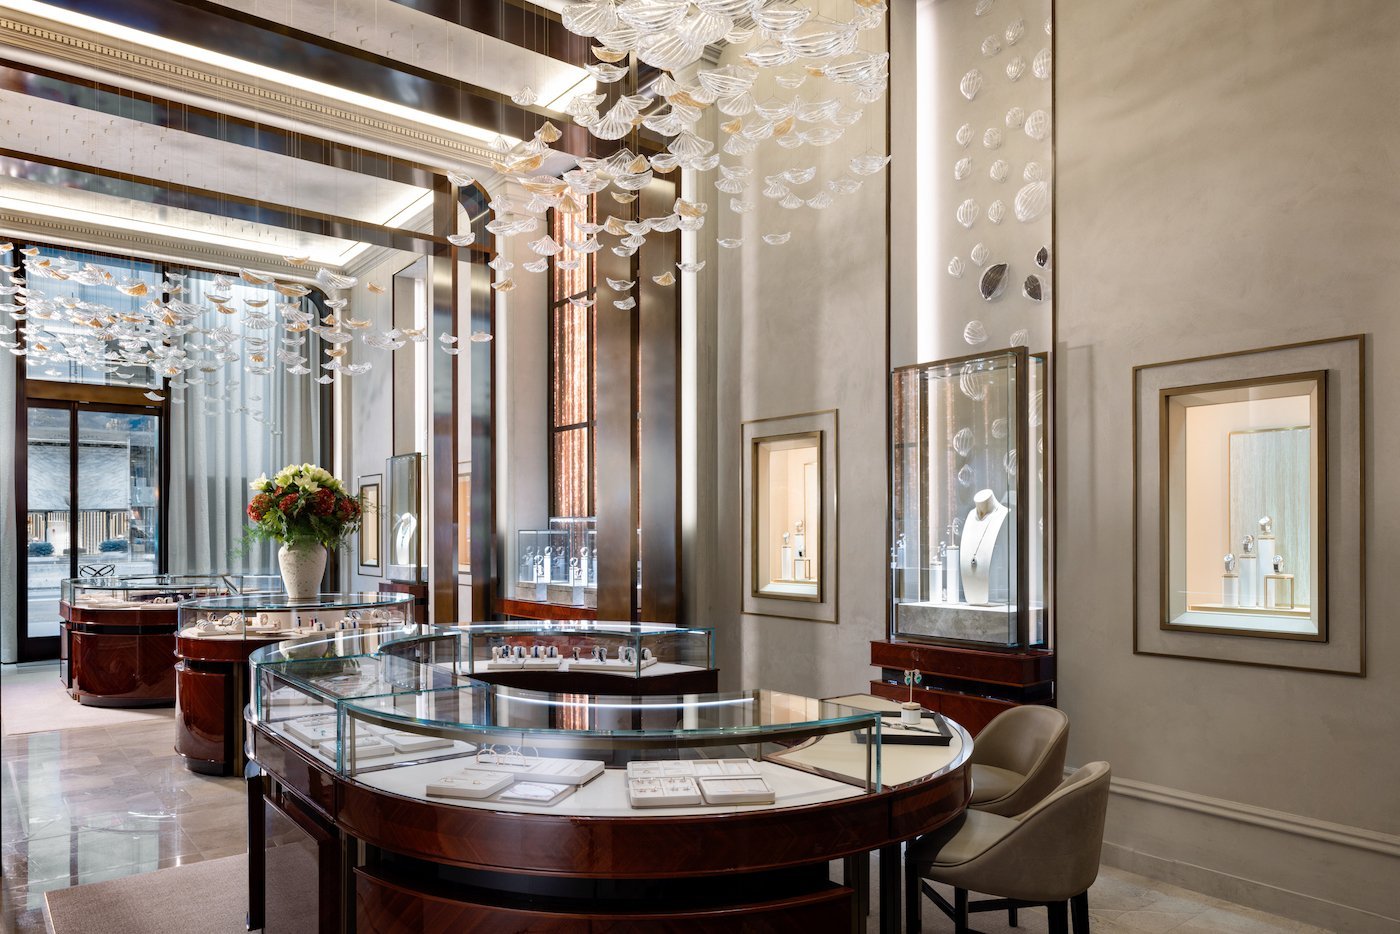 Paris : Louis Vuitton and Chopard present their new Haute